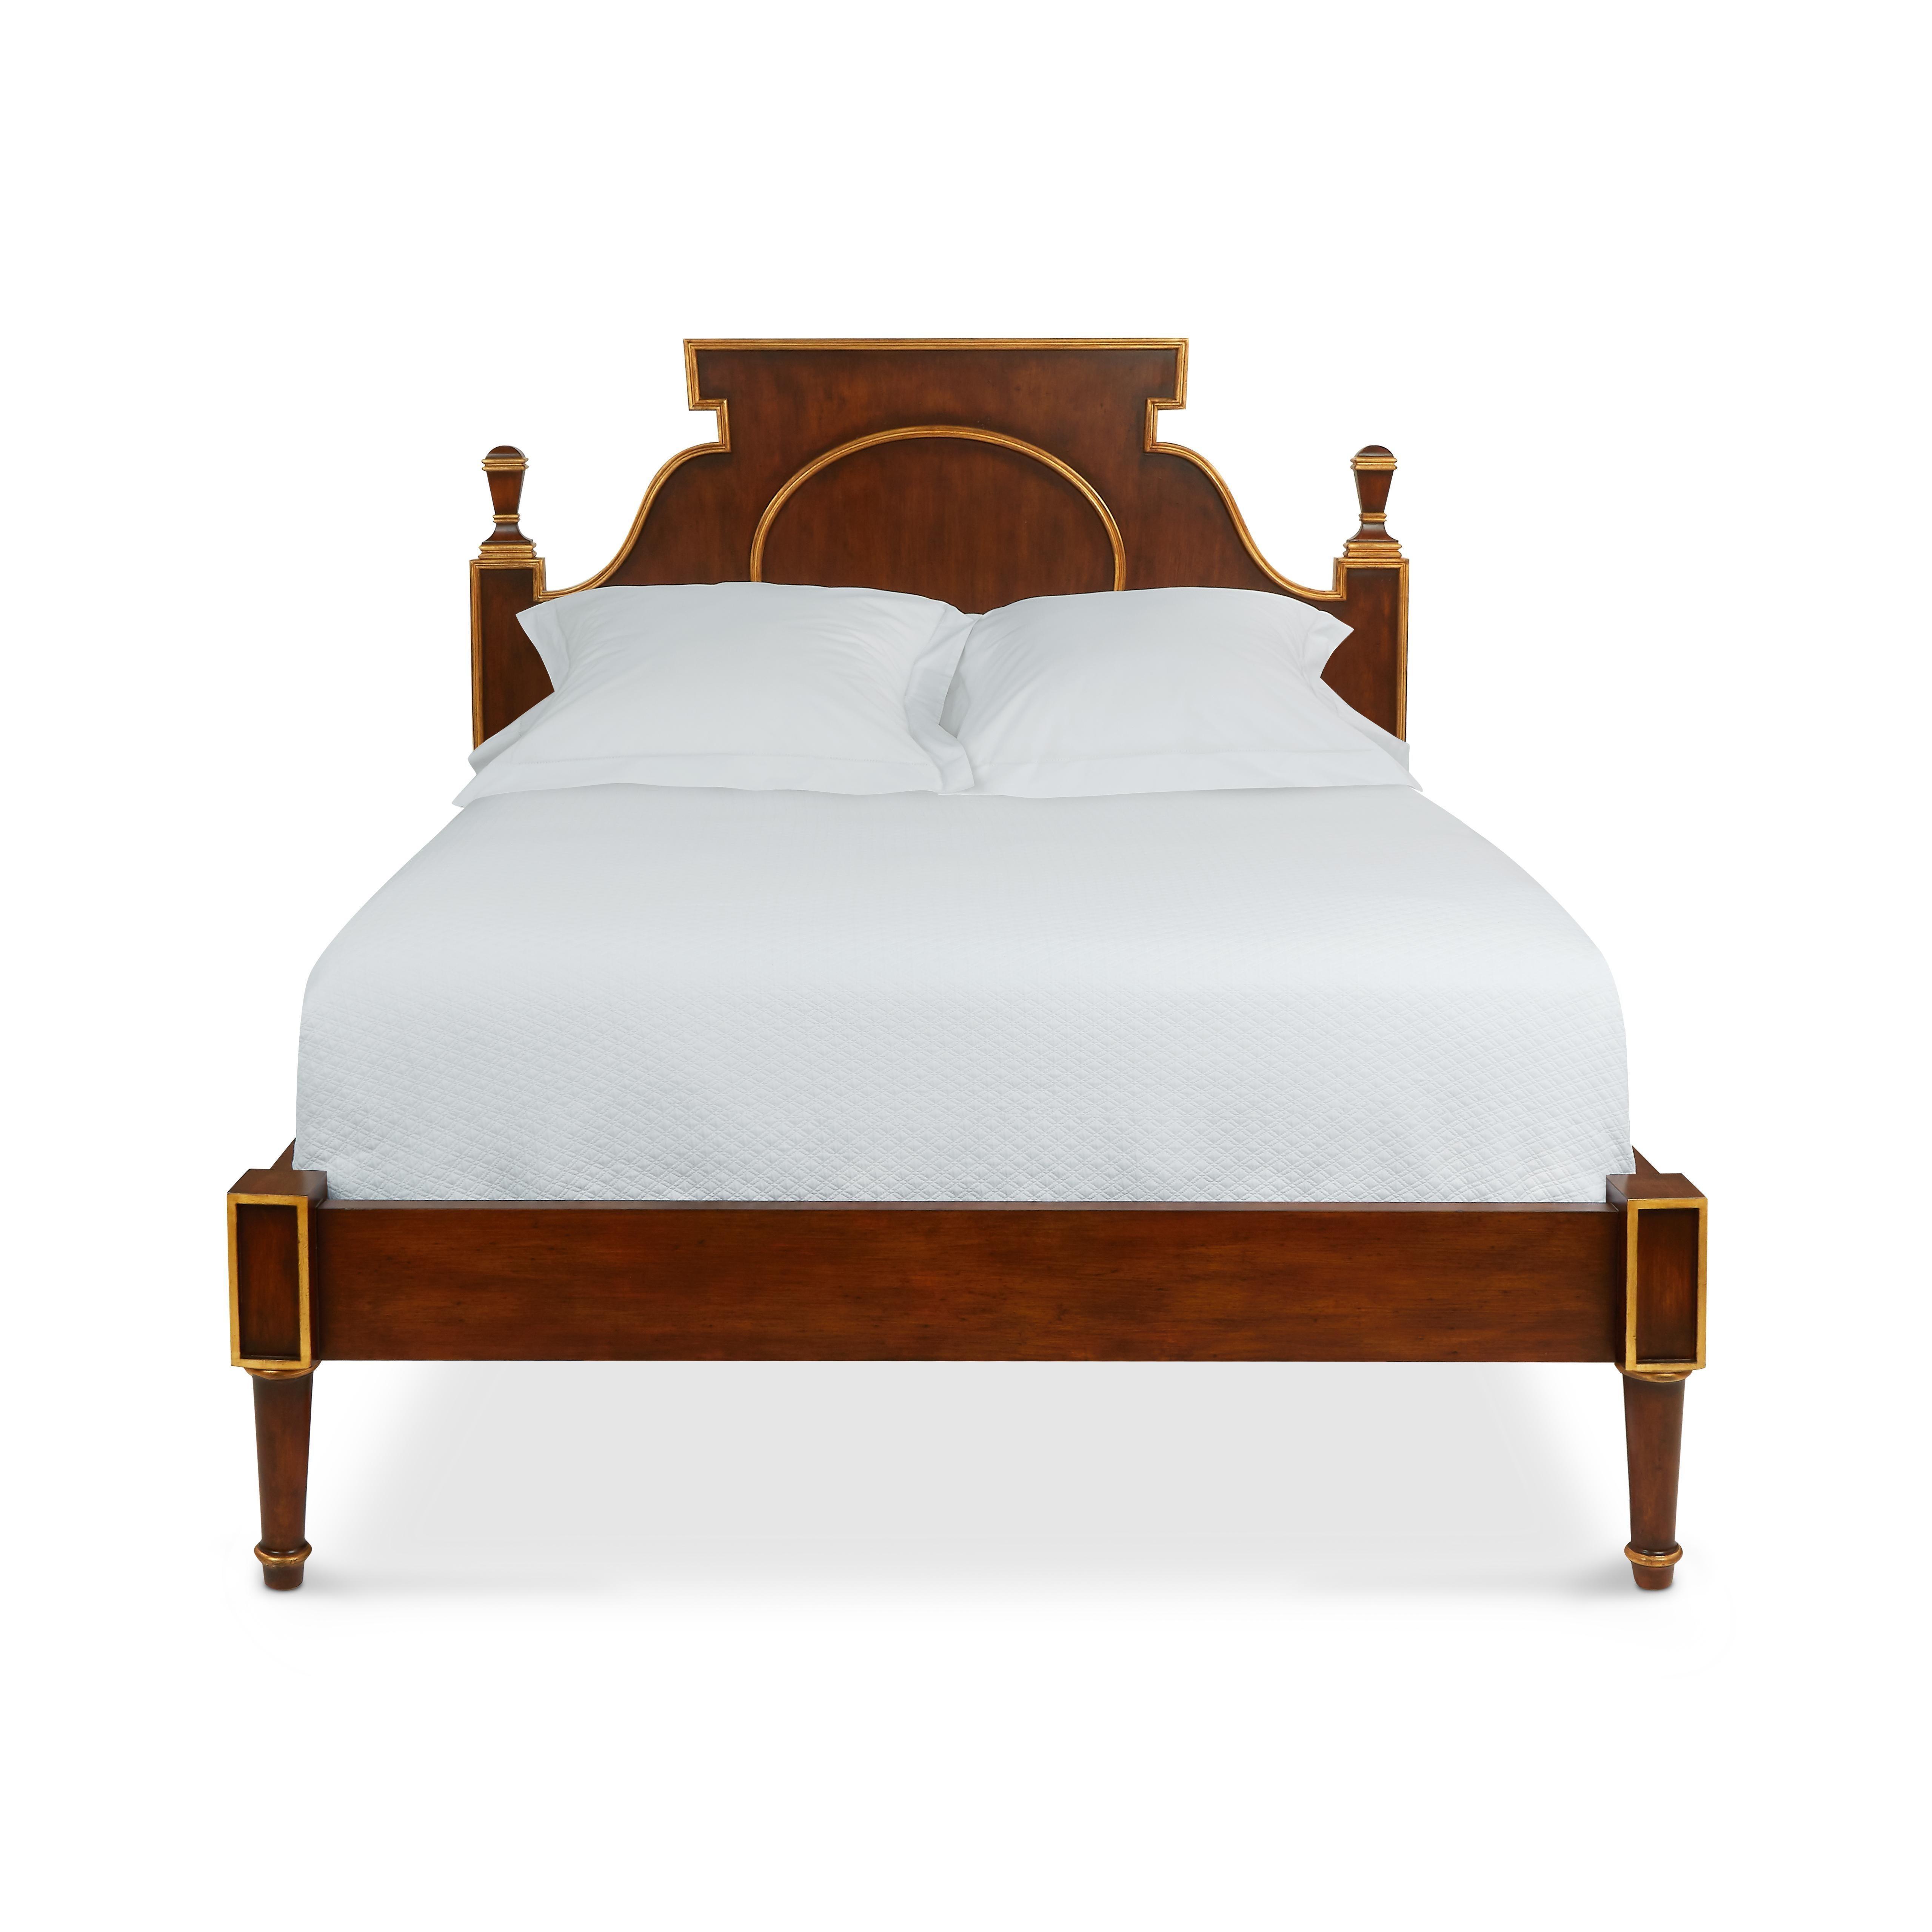 Les lits antiques italiens du XIXe siècle ont inspiré notre lit Lucia, qui présente une magnifique finition peinte en faux grain de noyer. Des détails dorés sur les bords, notamment les fleurons de la tête de lit et le médaillon ovale, soulignent sa